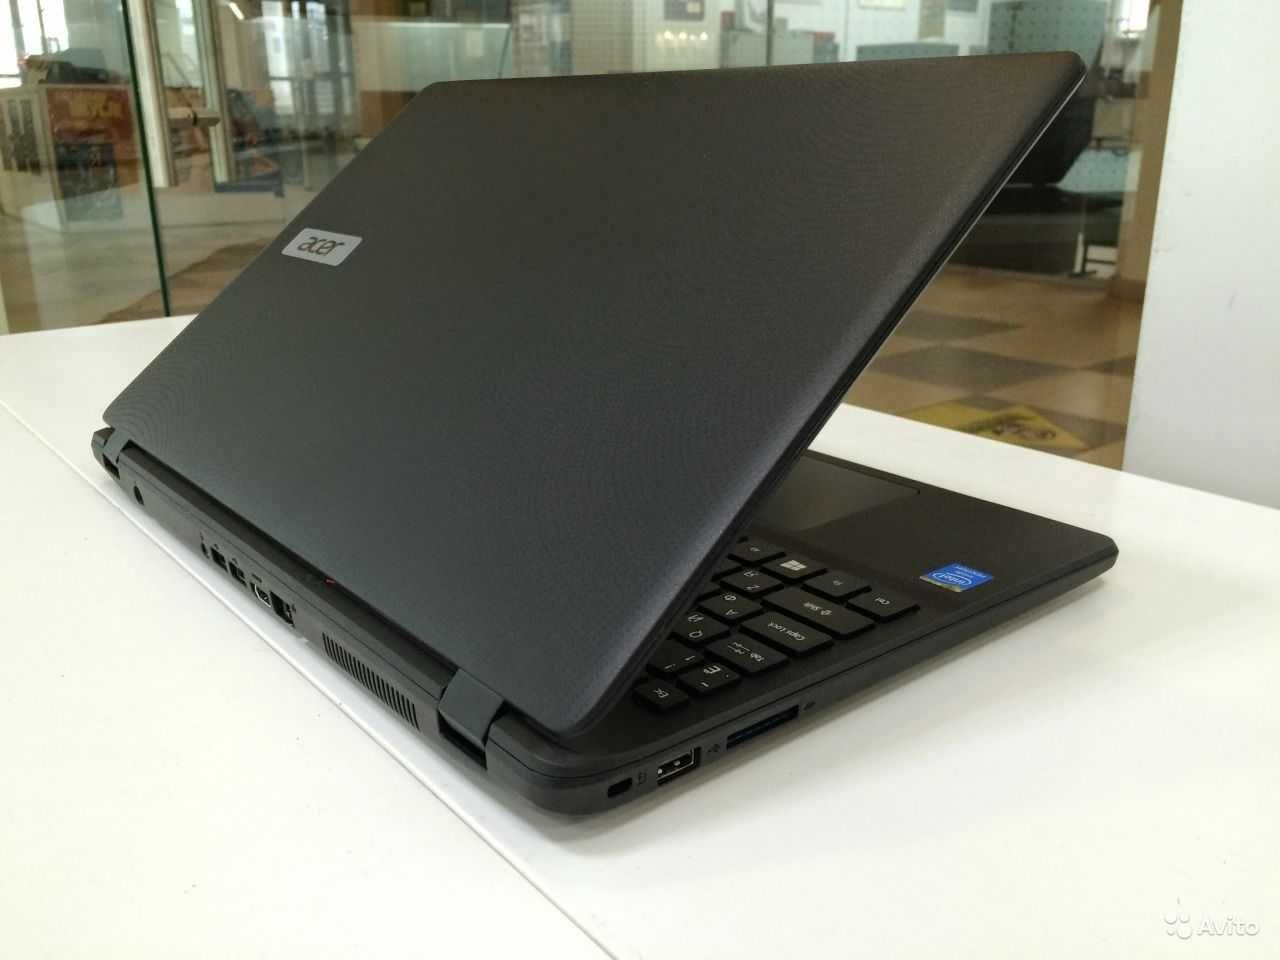 Современный ноутбук Acer c большим экраном 17.3"